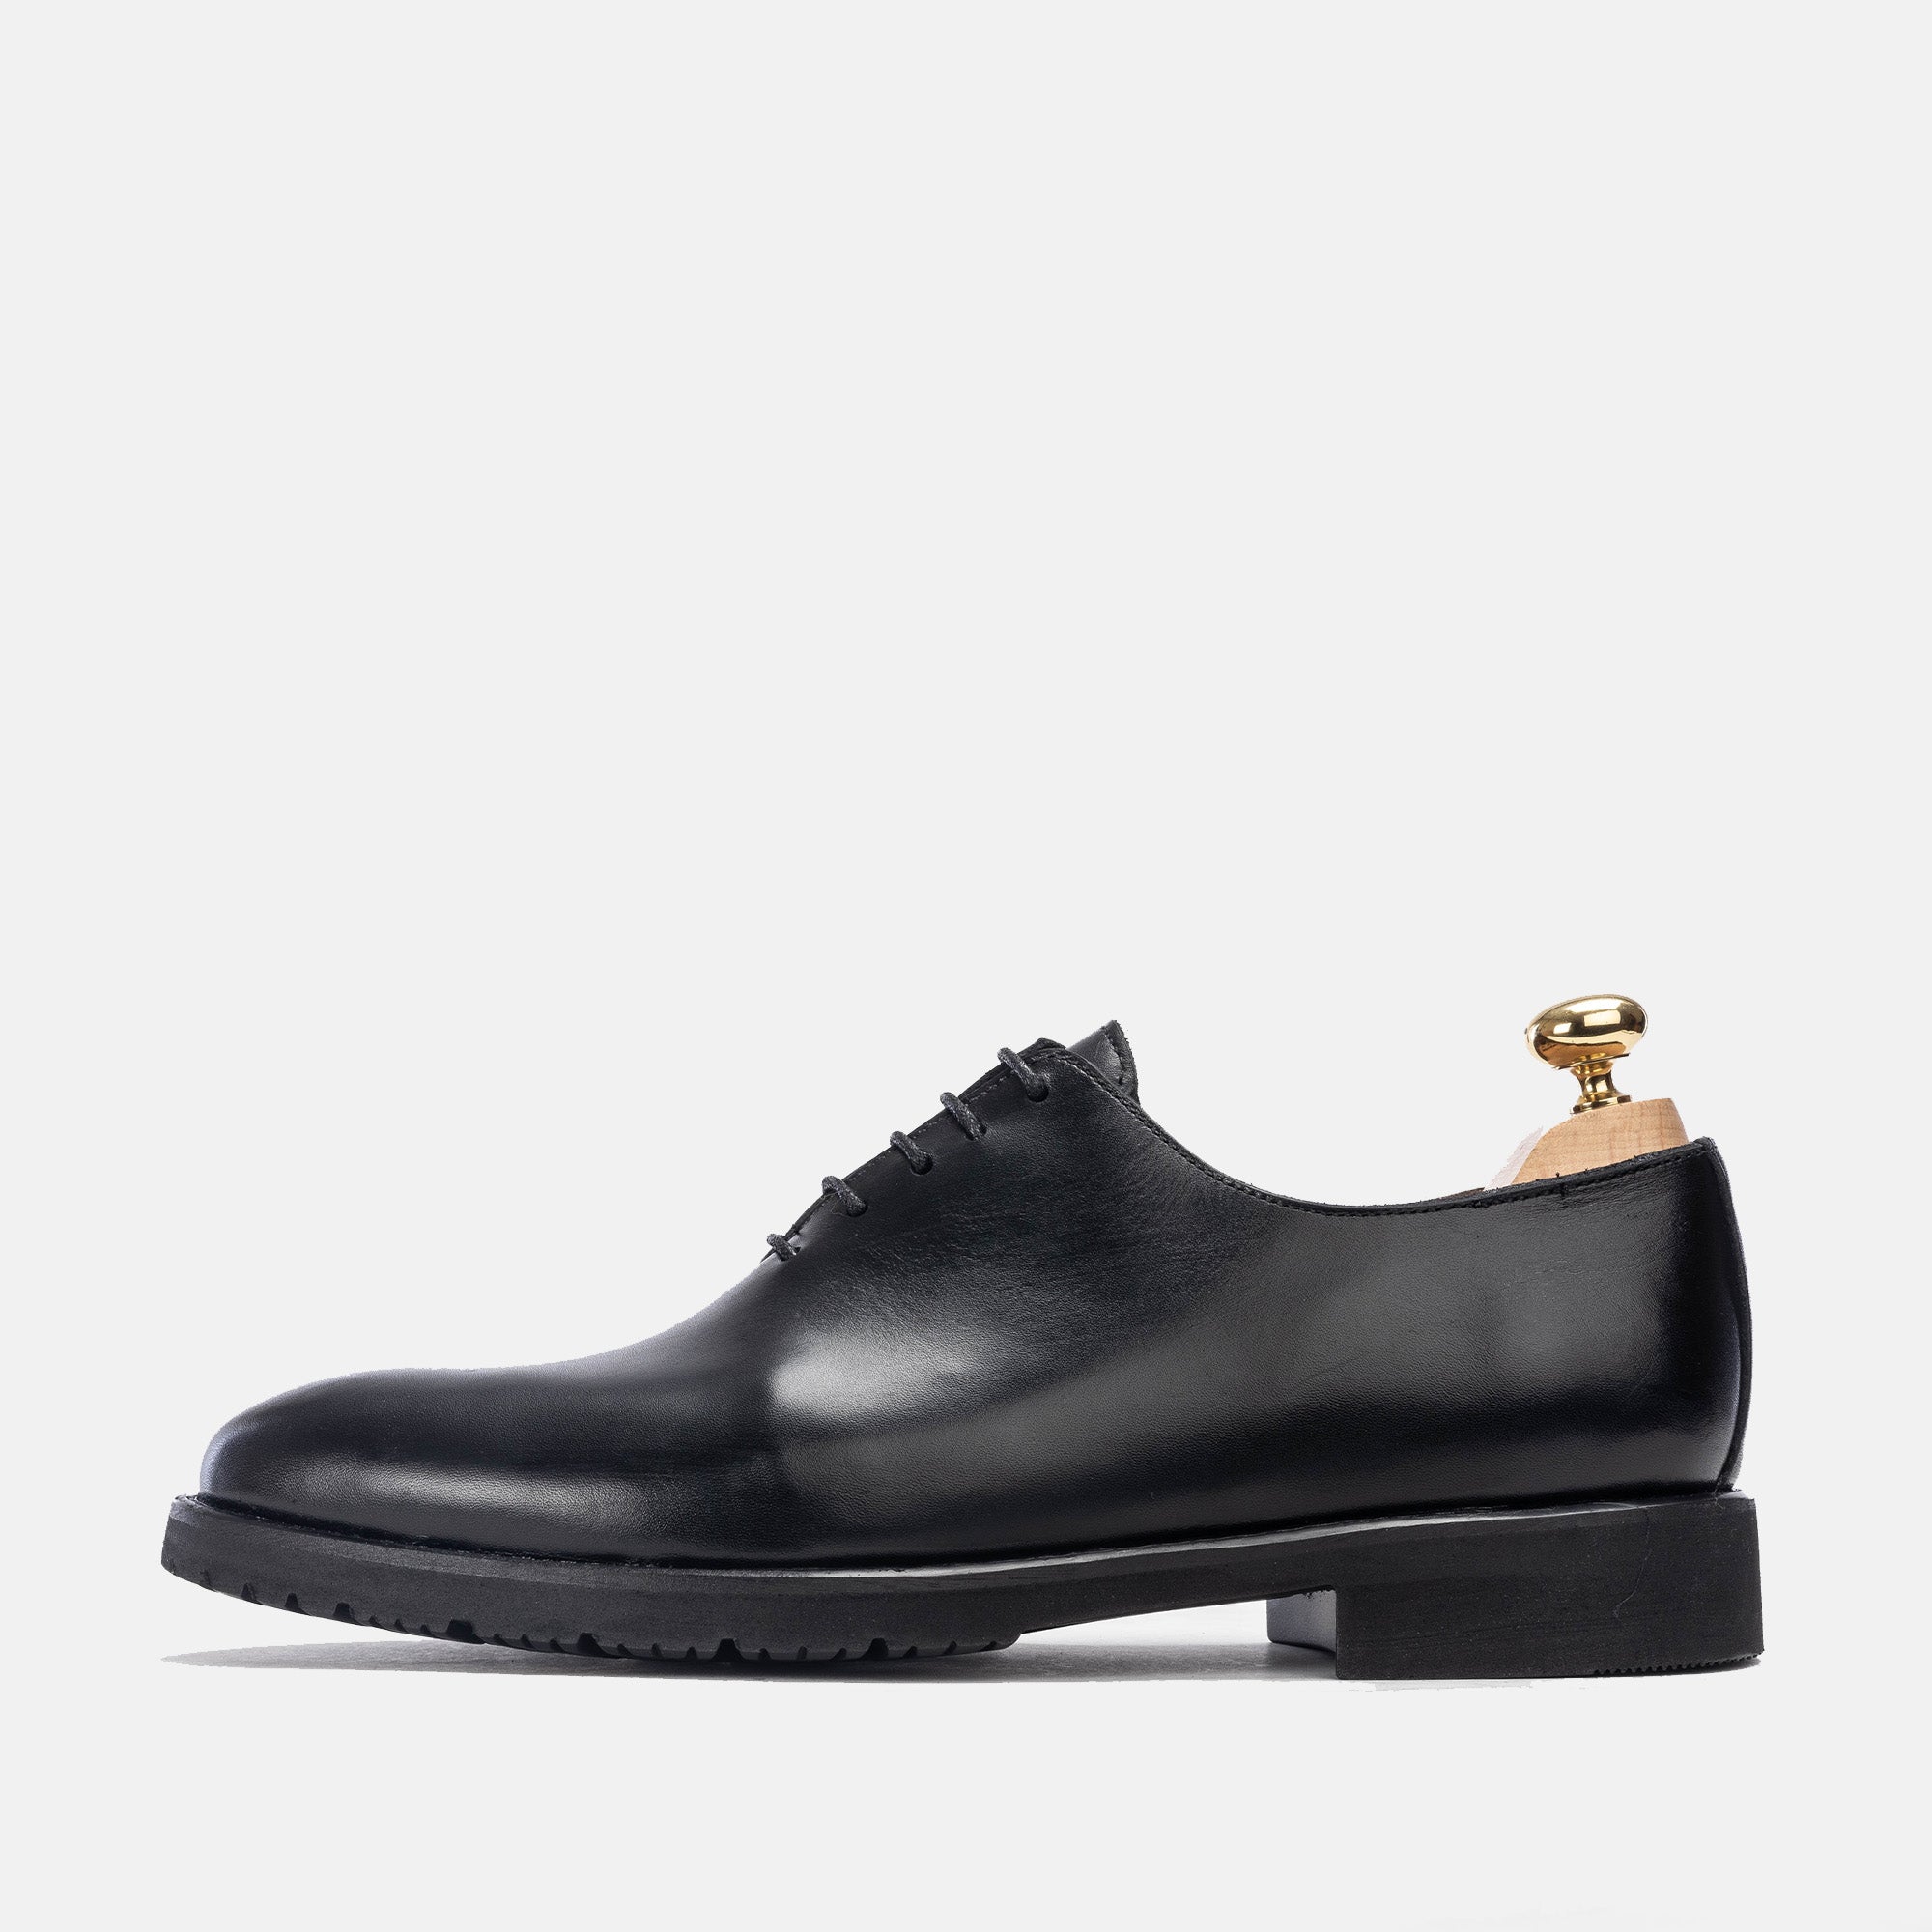 '''5161 chaussure cuir noir